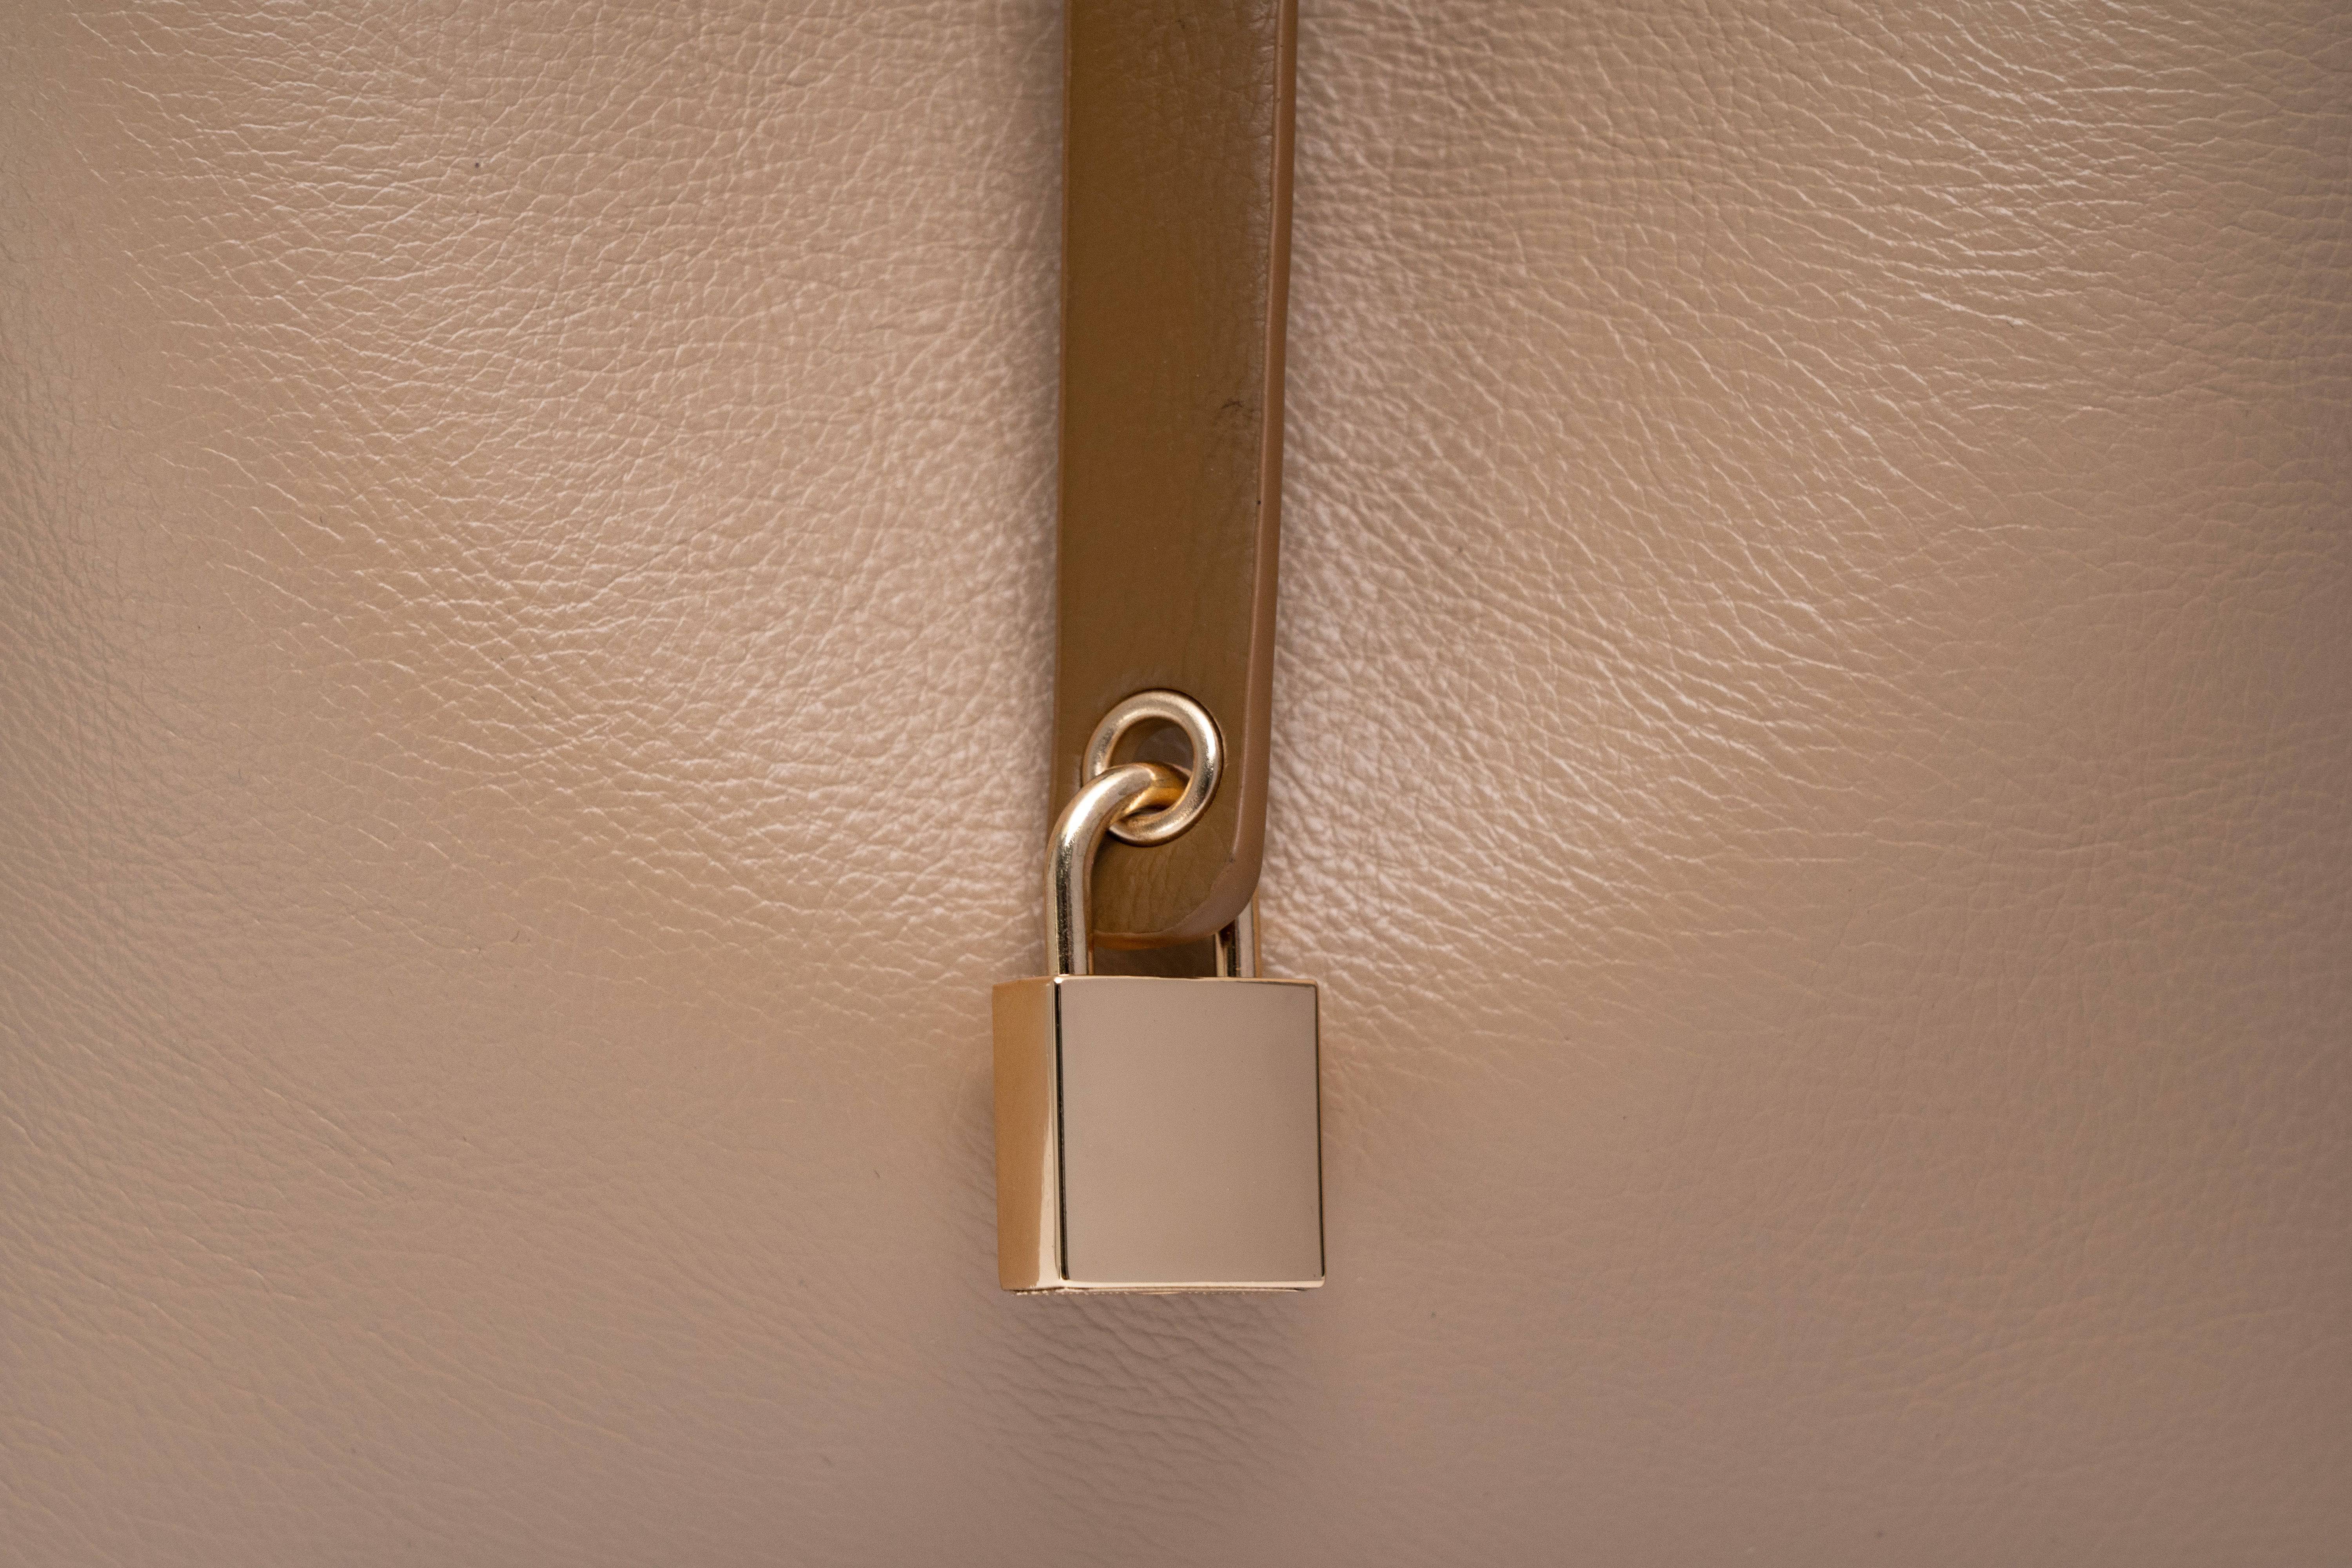 حقيبة نسائية بيد باللون الاسود طويلة وحزام للكتف وبتصميم أنيق ومساحة داخلية كبيرة - KSA